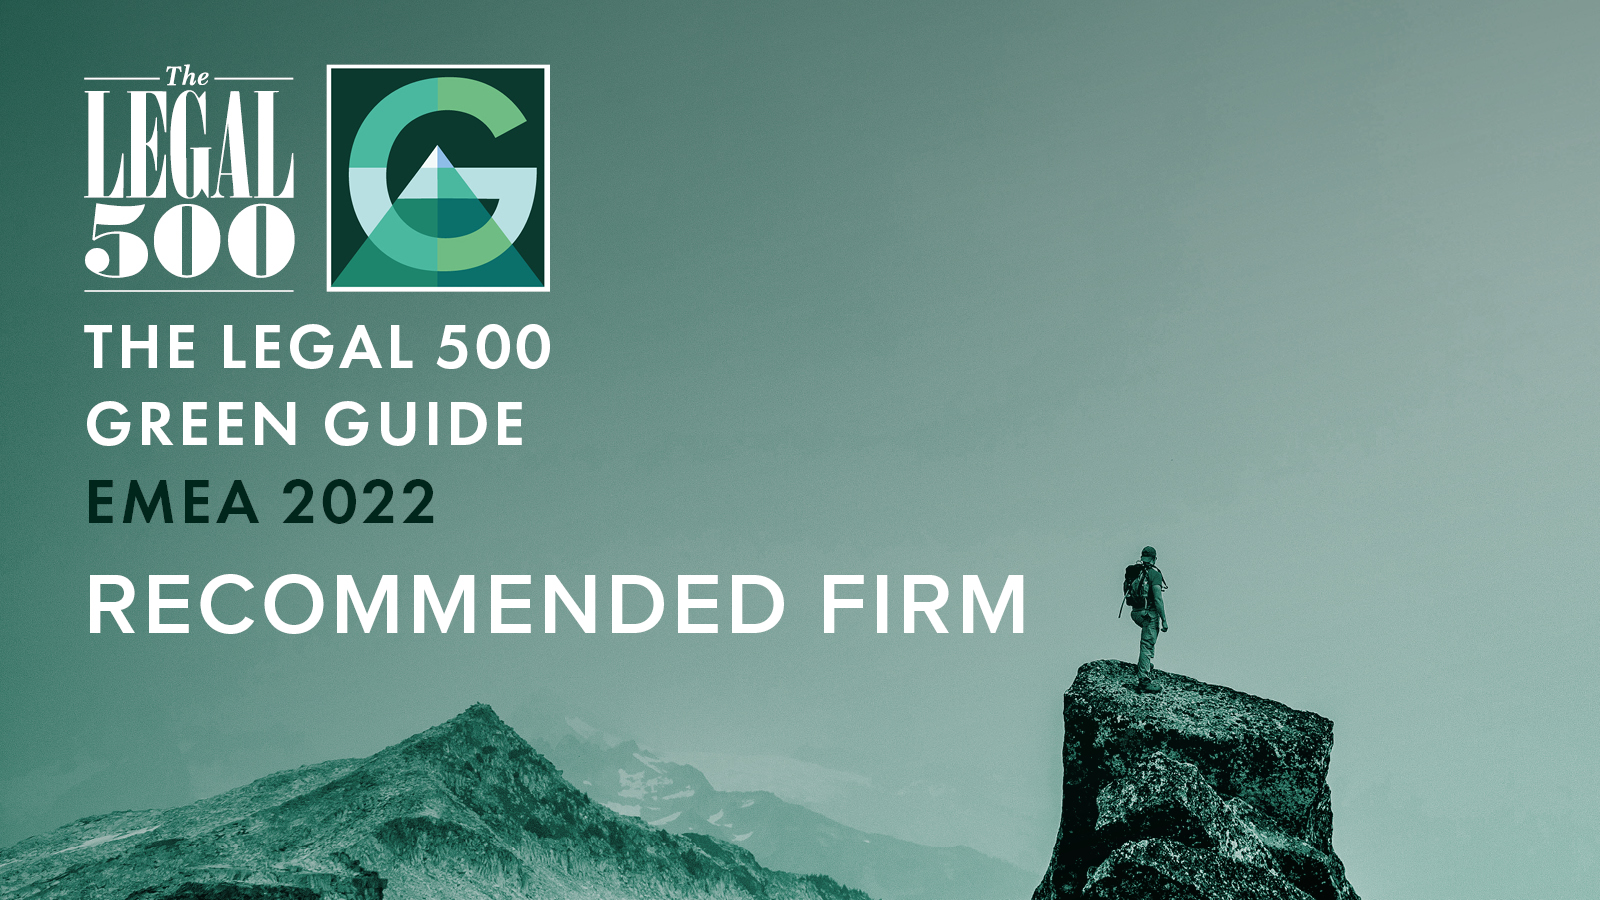 Garrigues, incluido en la primera guía ‘The Legal 500 Global Green Guide’ por su contribución a la transición ecológica